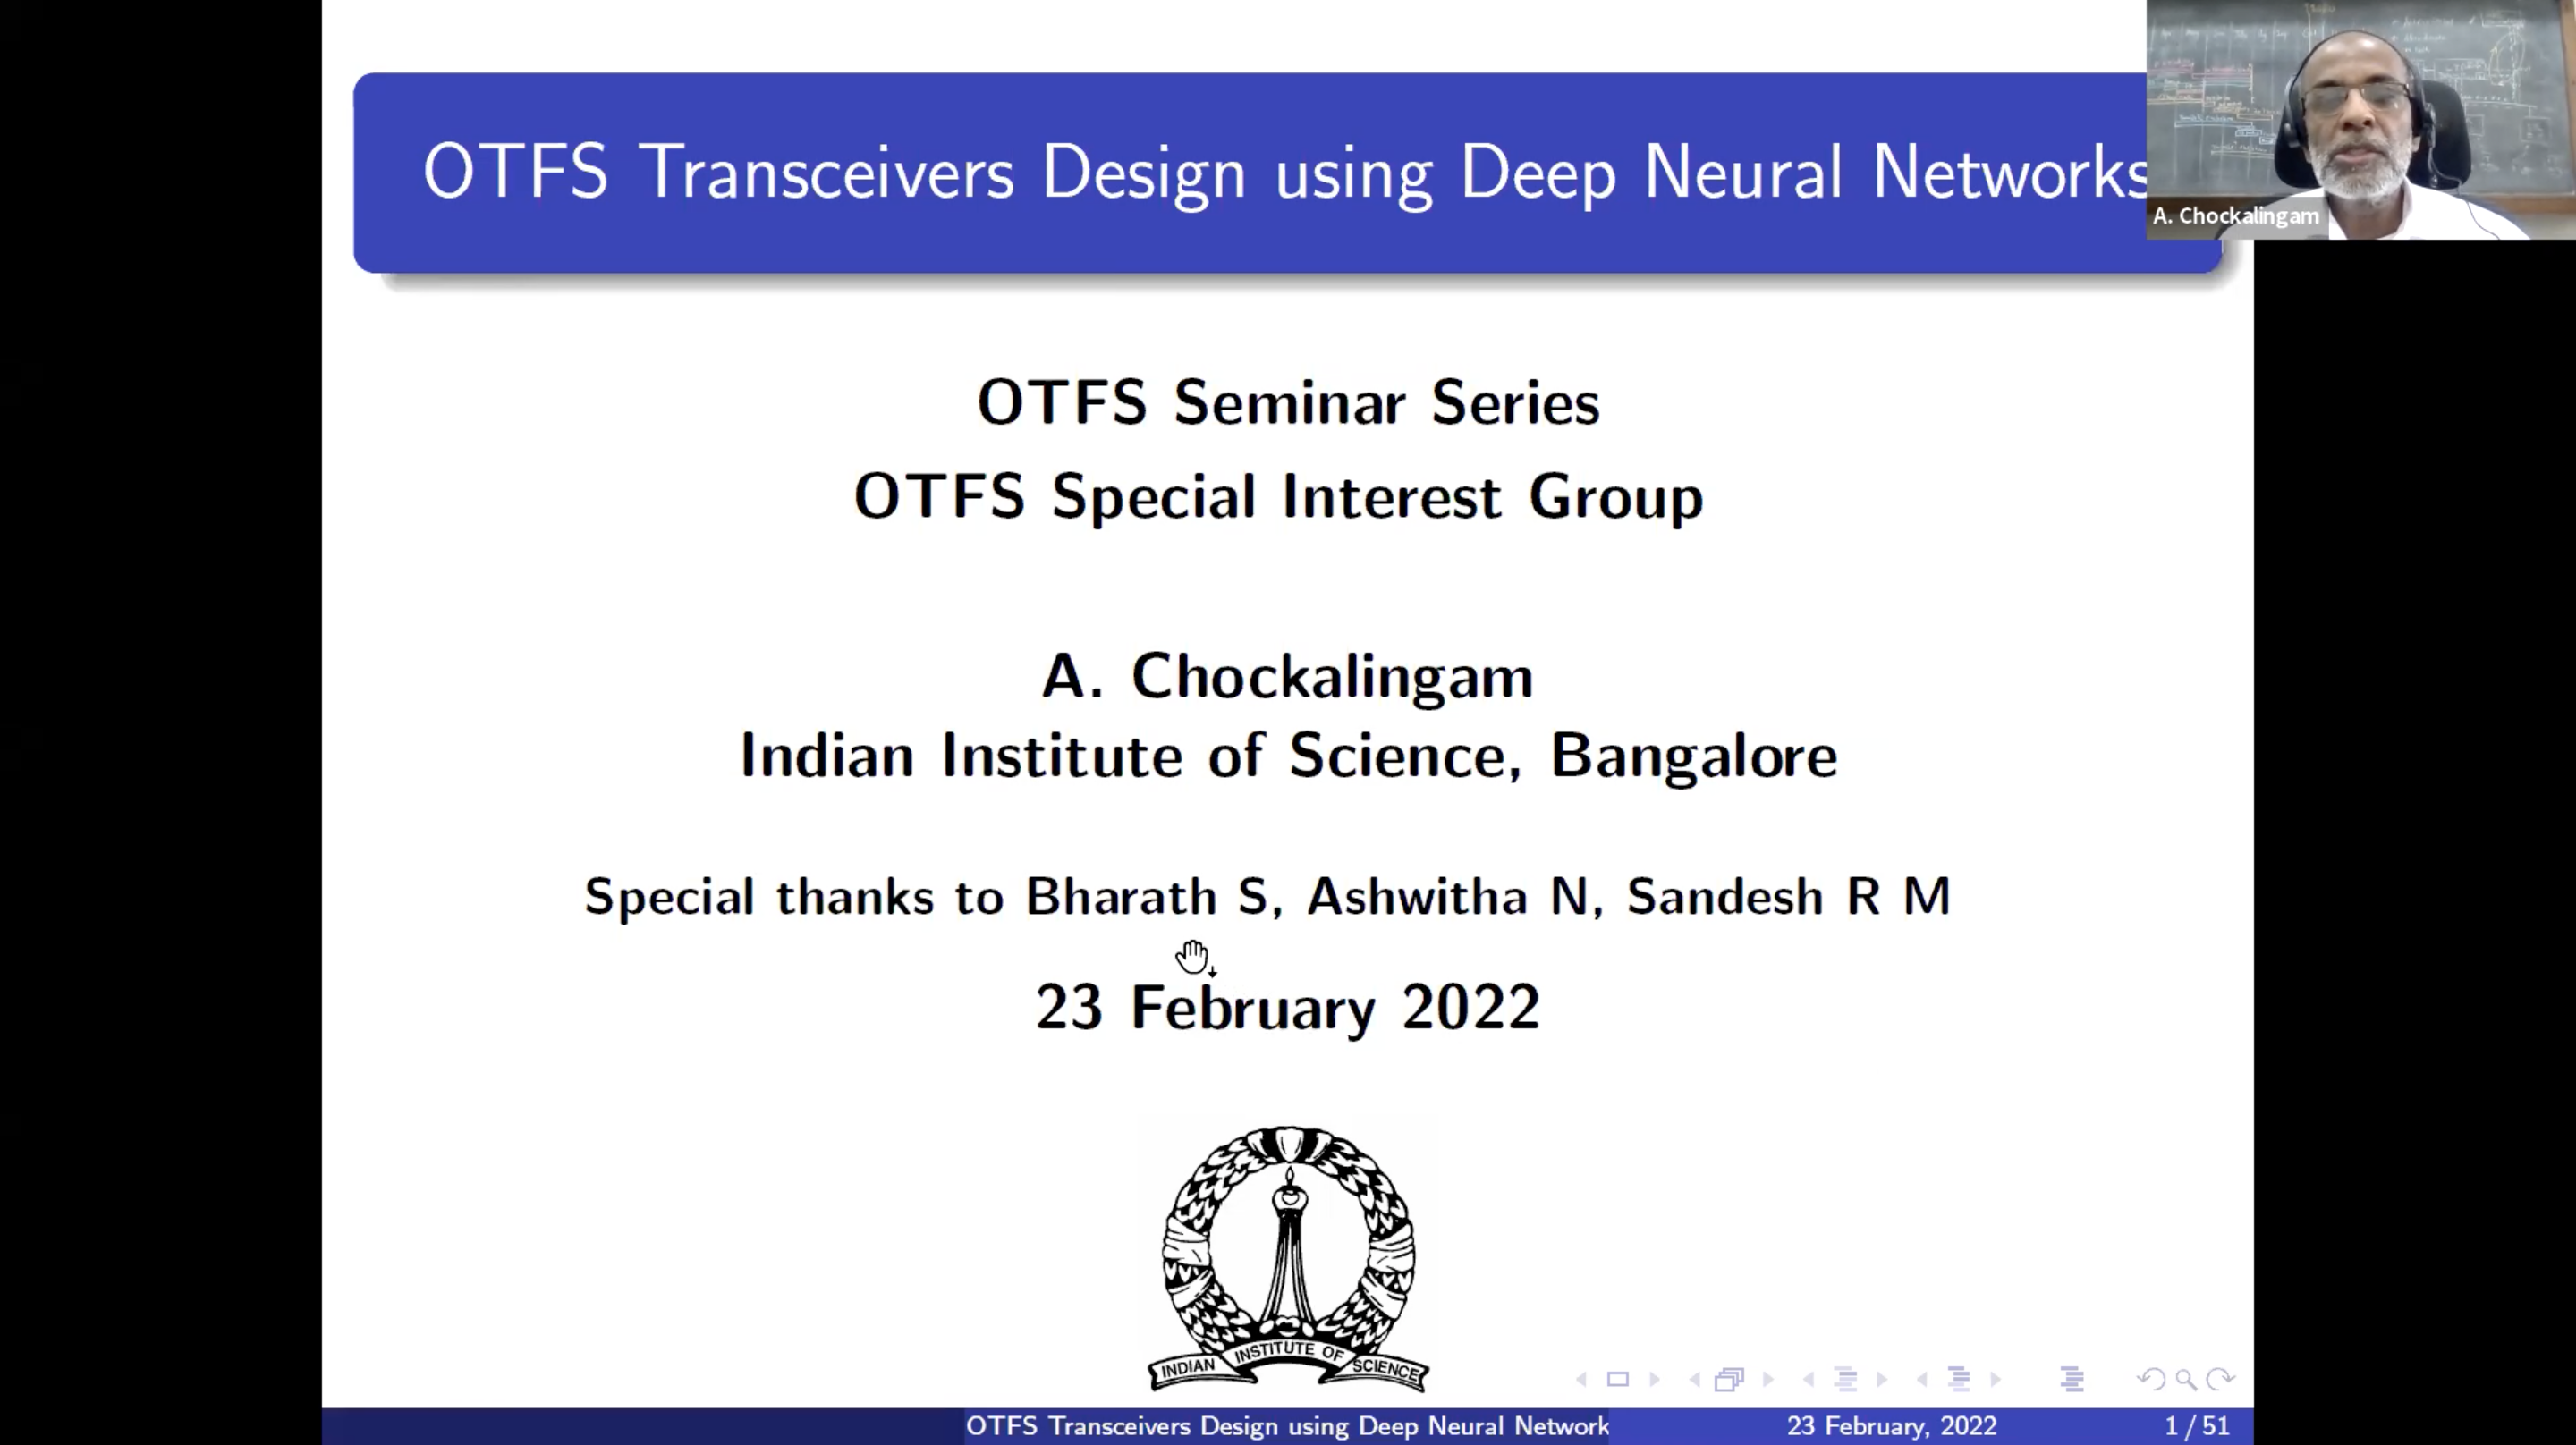 OTFS Transceivers Design using Deep Neural Networks